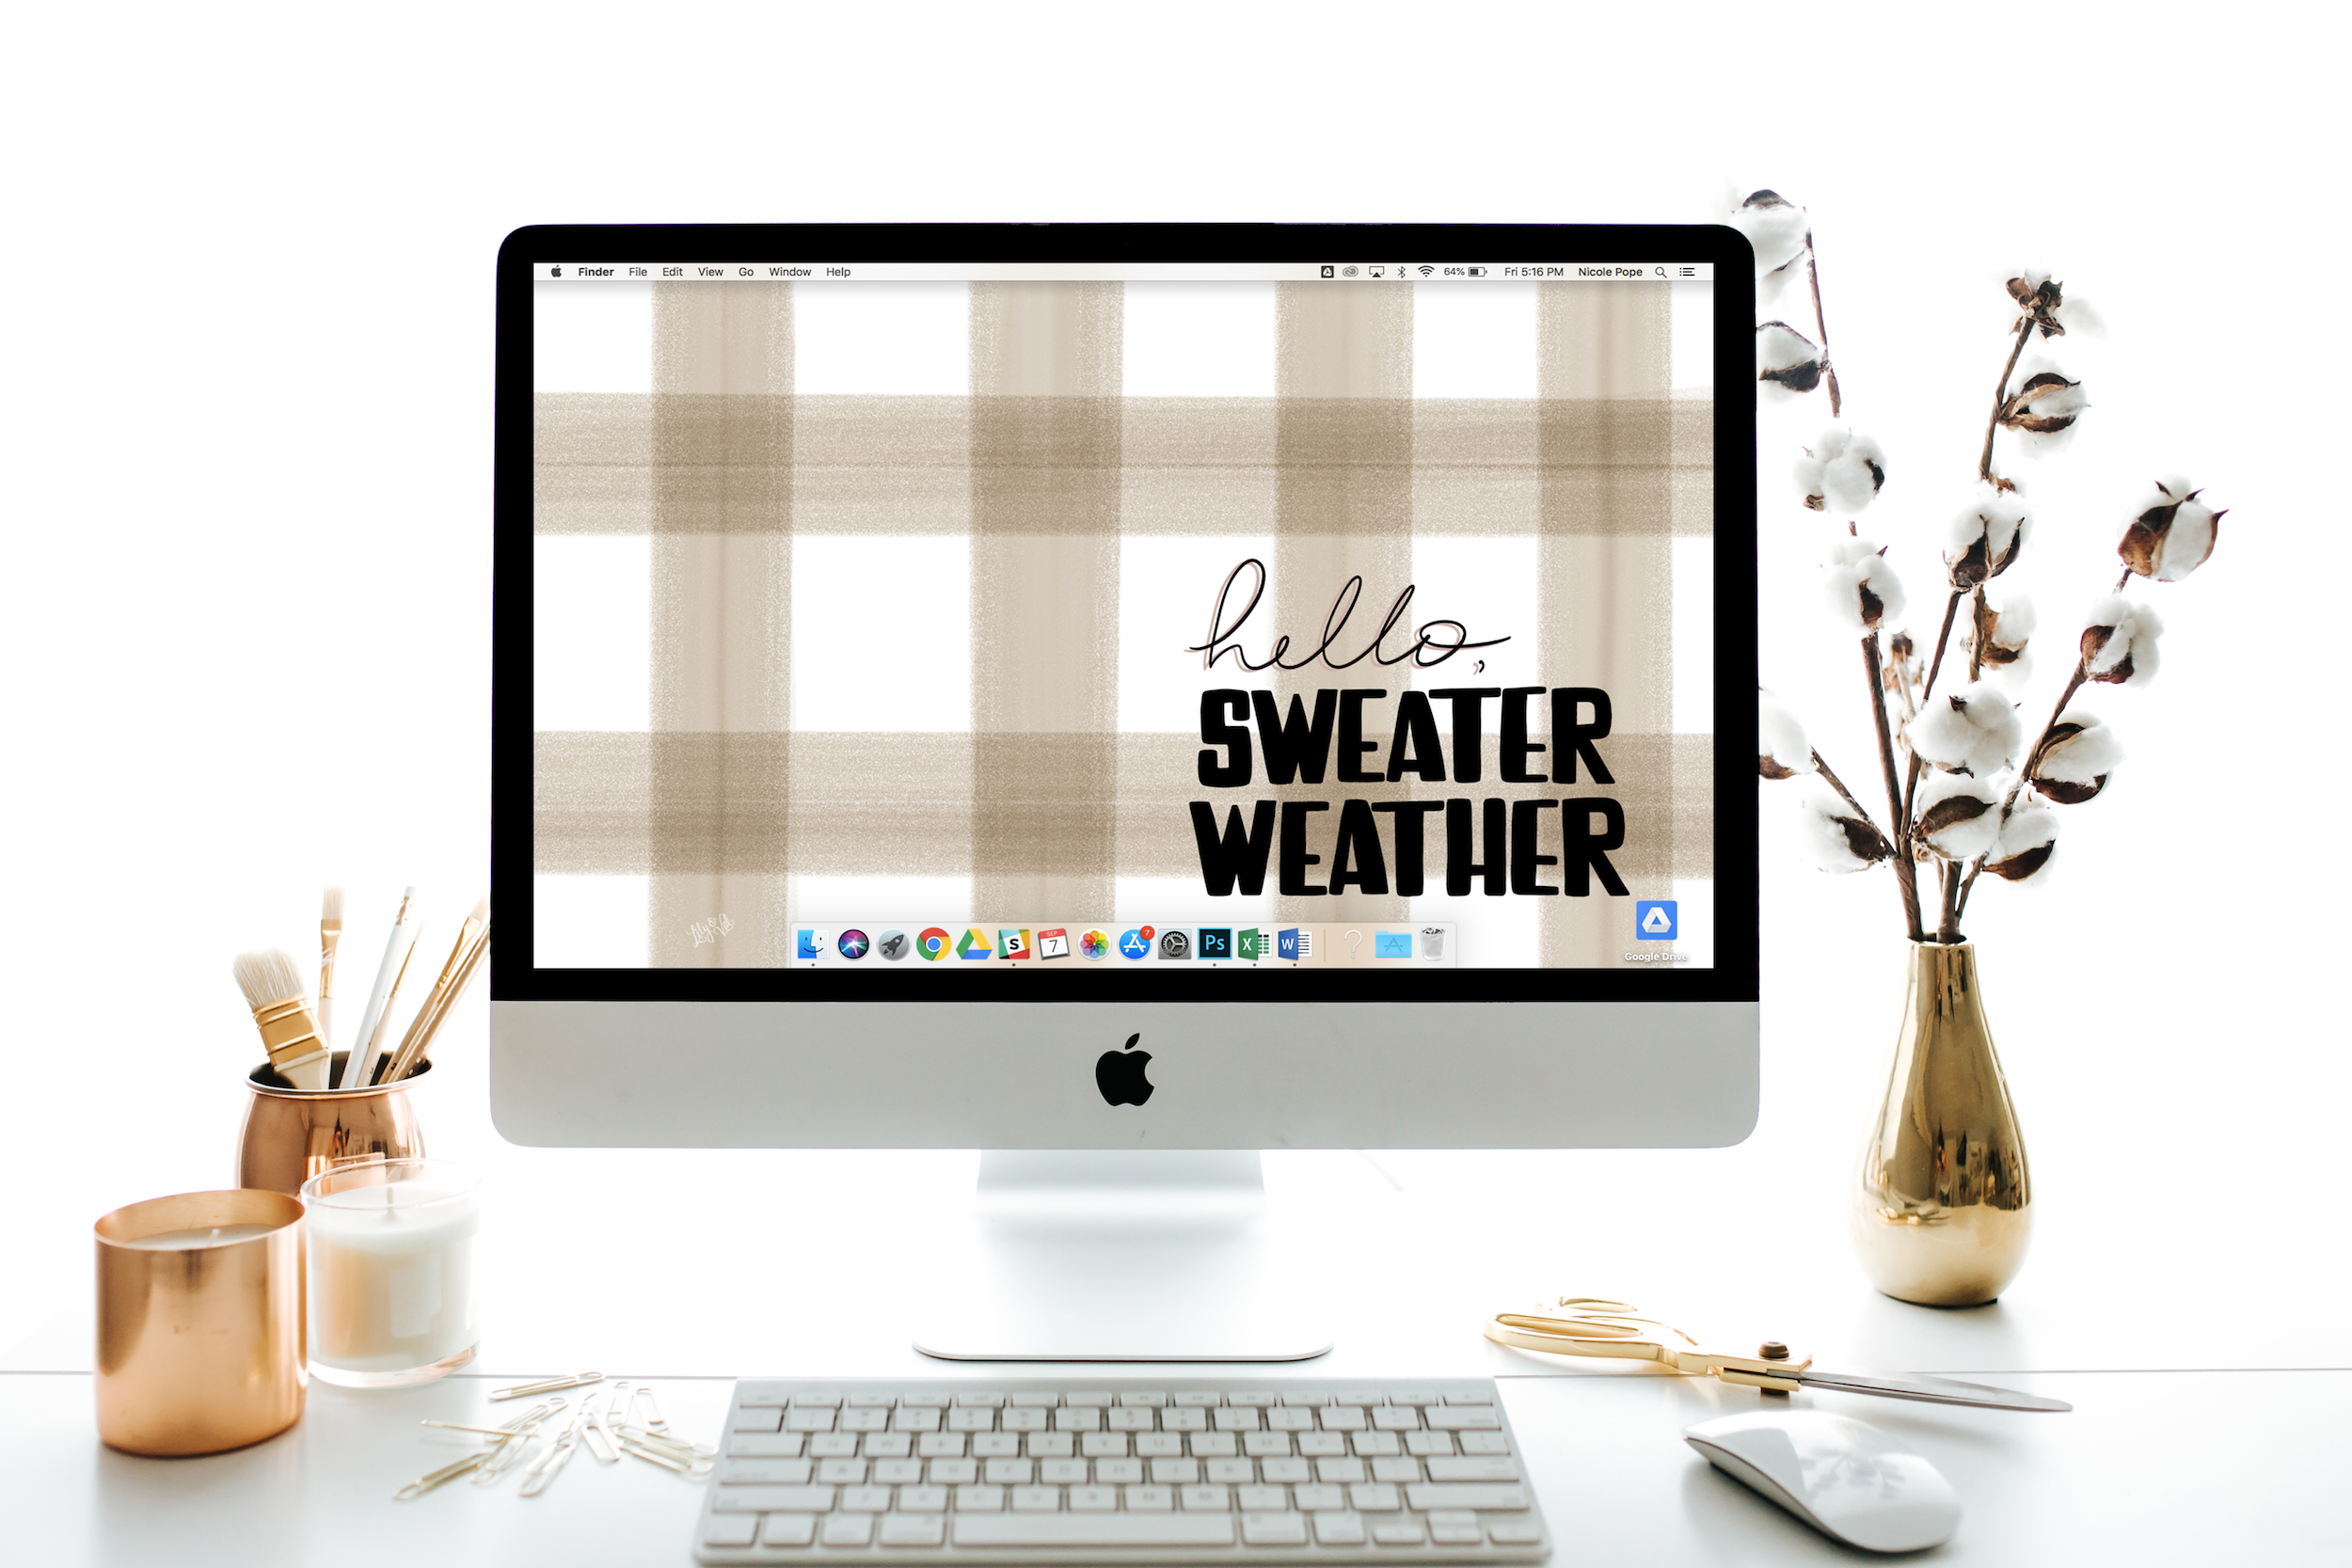 October's "Hello Sweater Weather" FREE Desktop Download